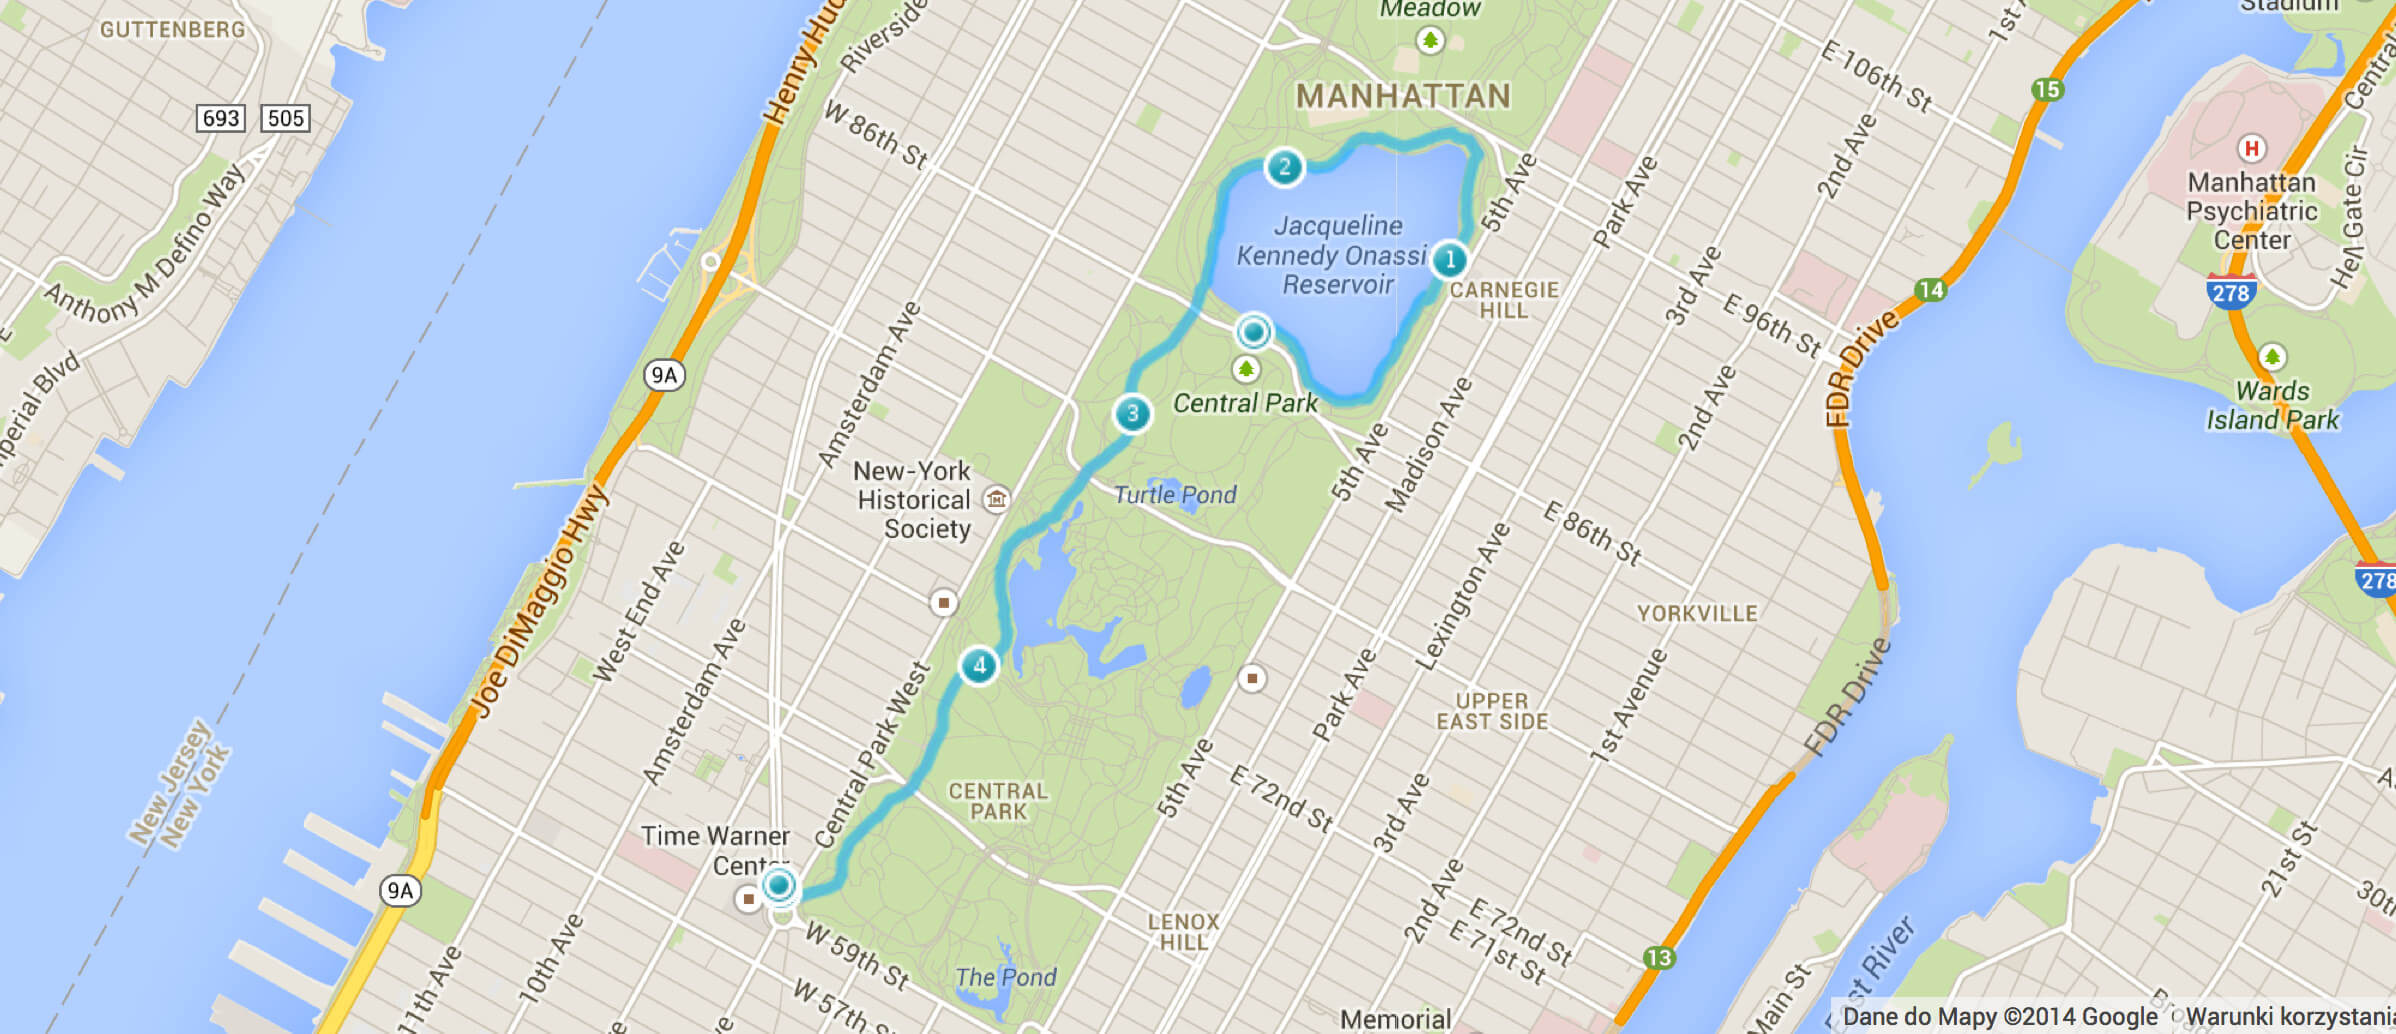 Dla porównania – mój pierwszy bieg w NYC, o którym pisałem wam 3 tygodnie temu. Central Park, 5 kilometrów. Byłem po nim wykończony i zniechęcony.